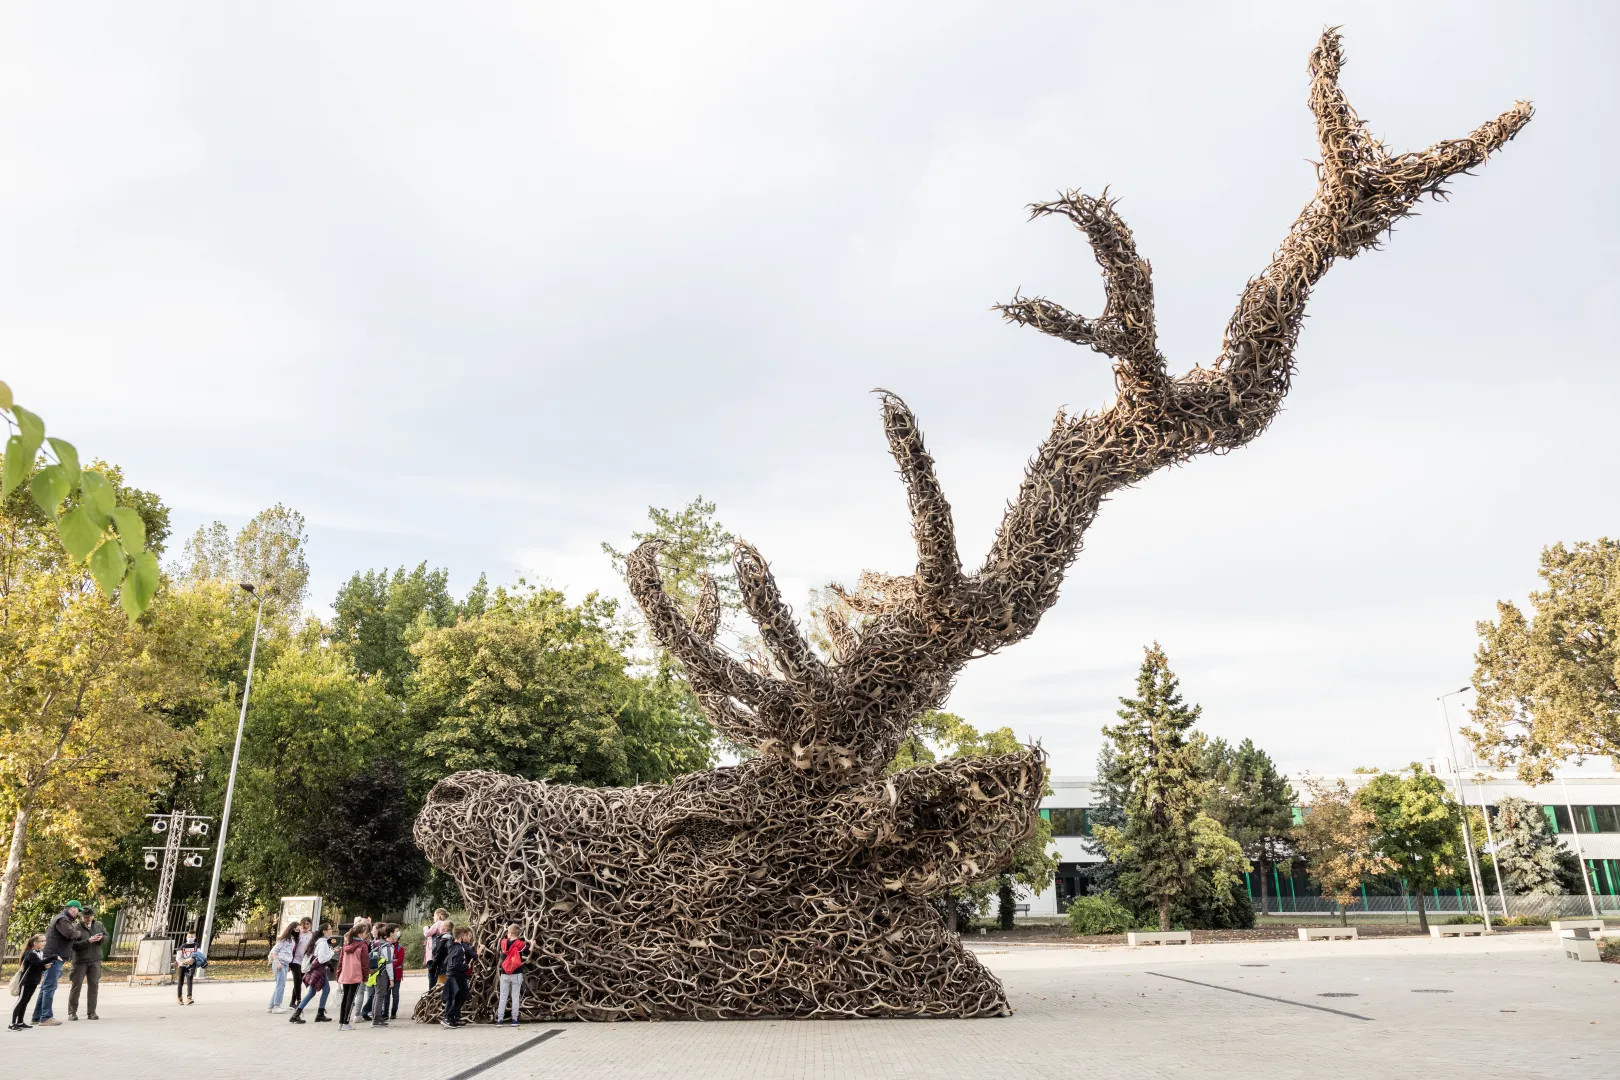 A vadászati világkiállítás bejárata előtt felállított agancsokból készült szobor 2021 októberében – Németh Sz. Péter / Telex